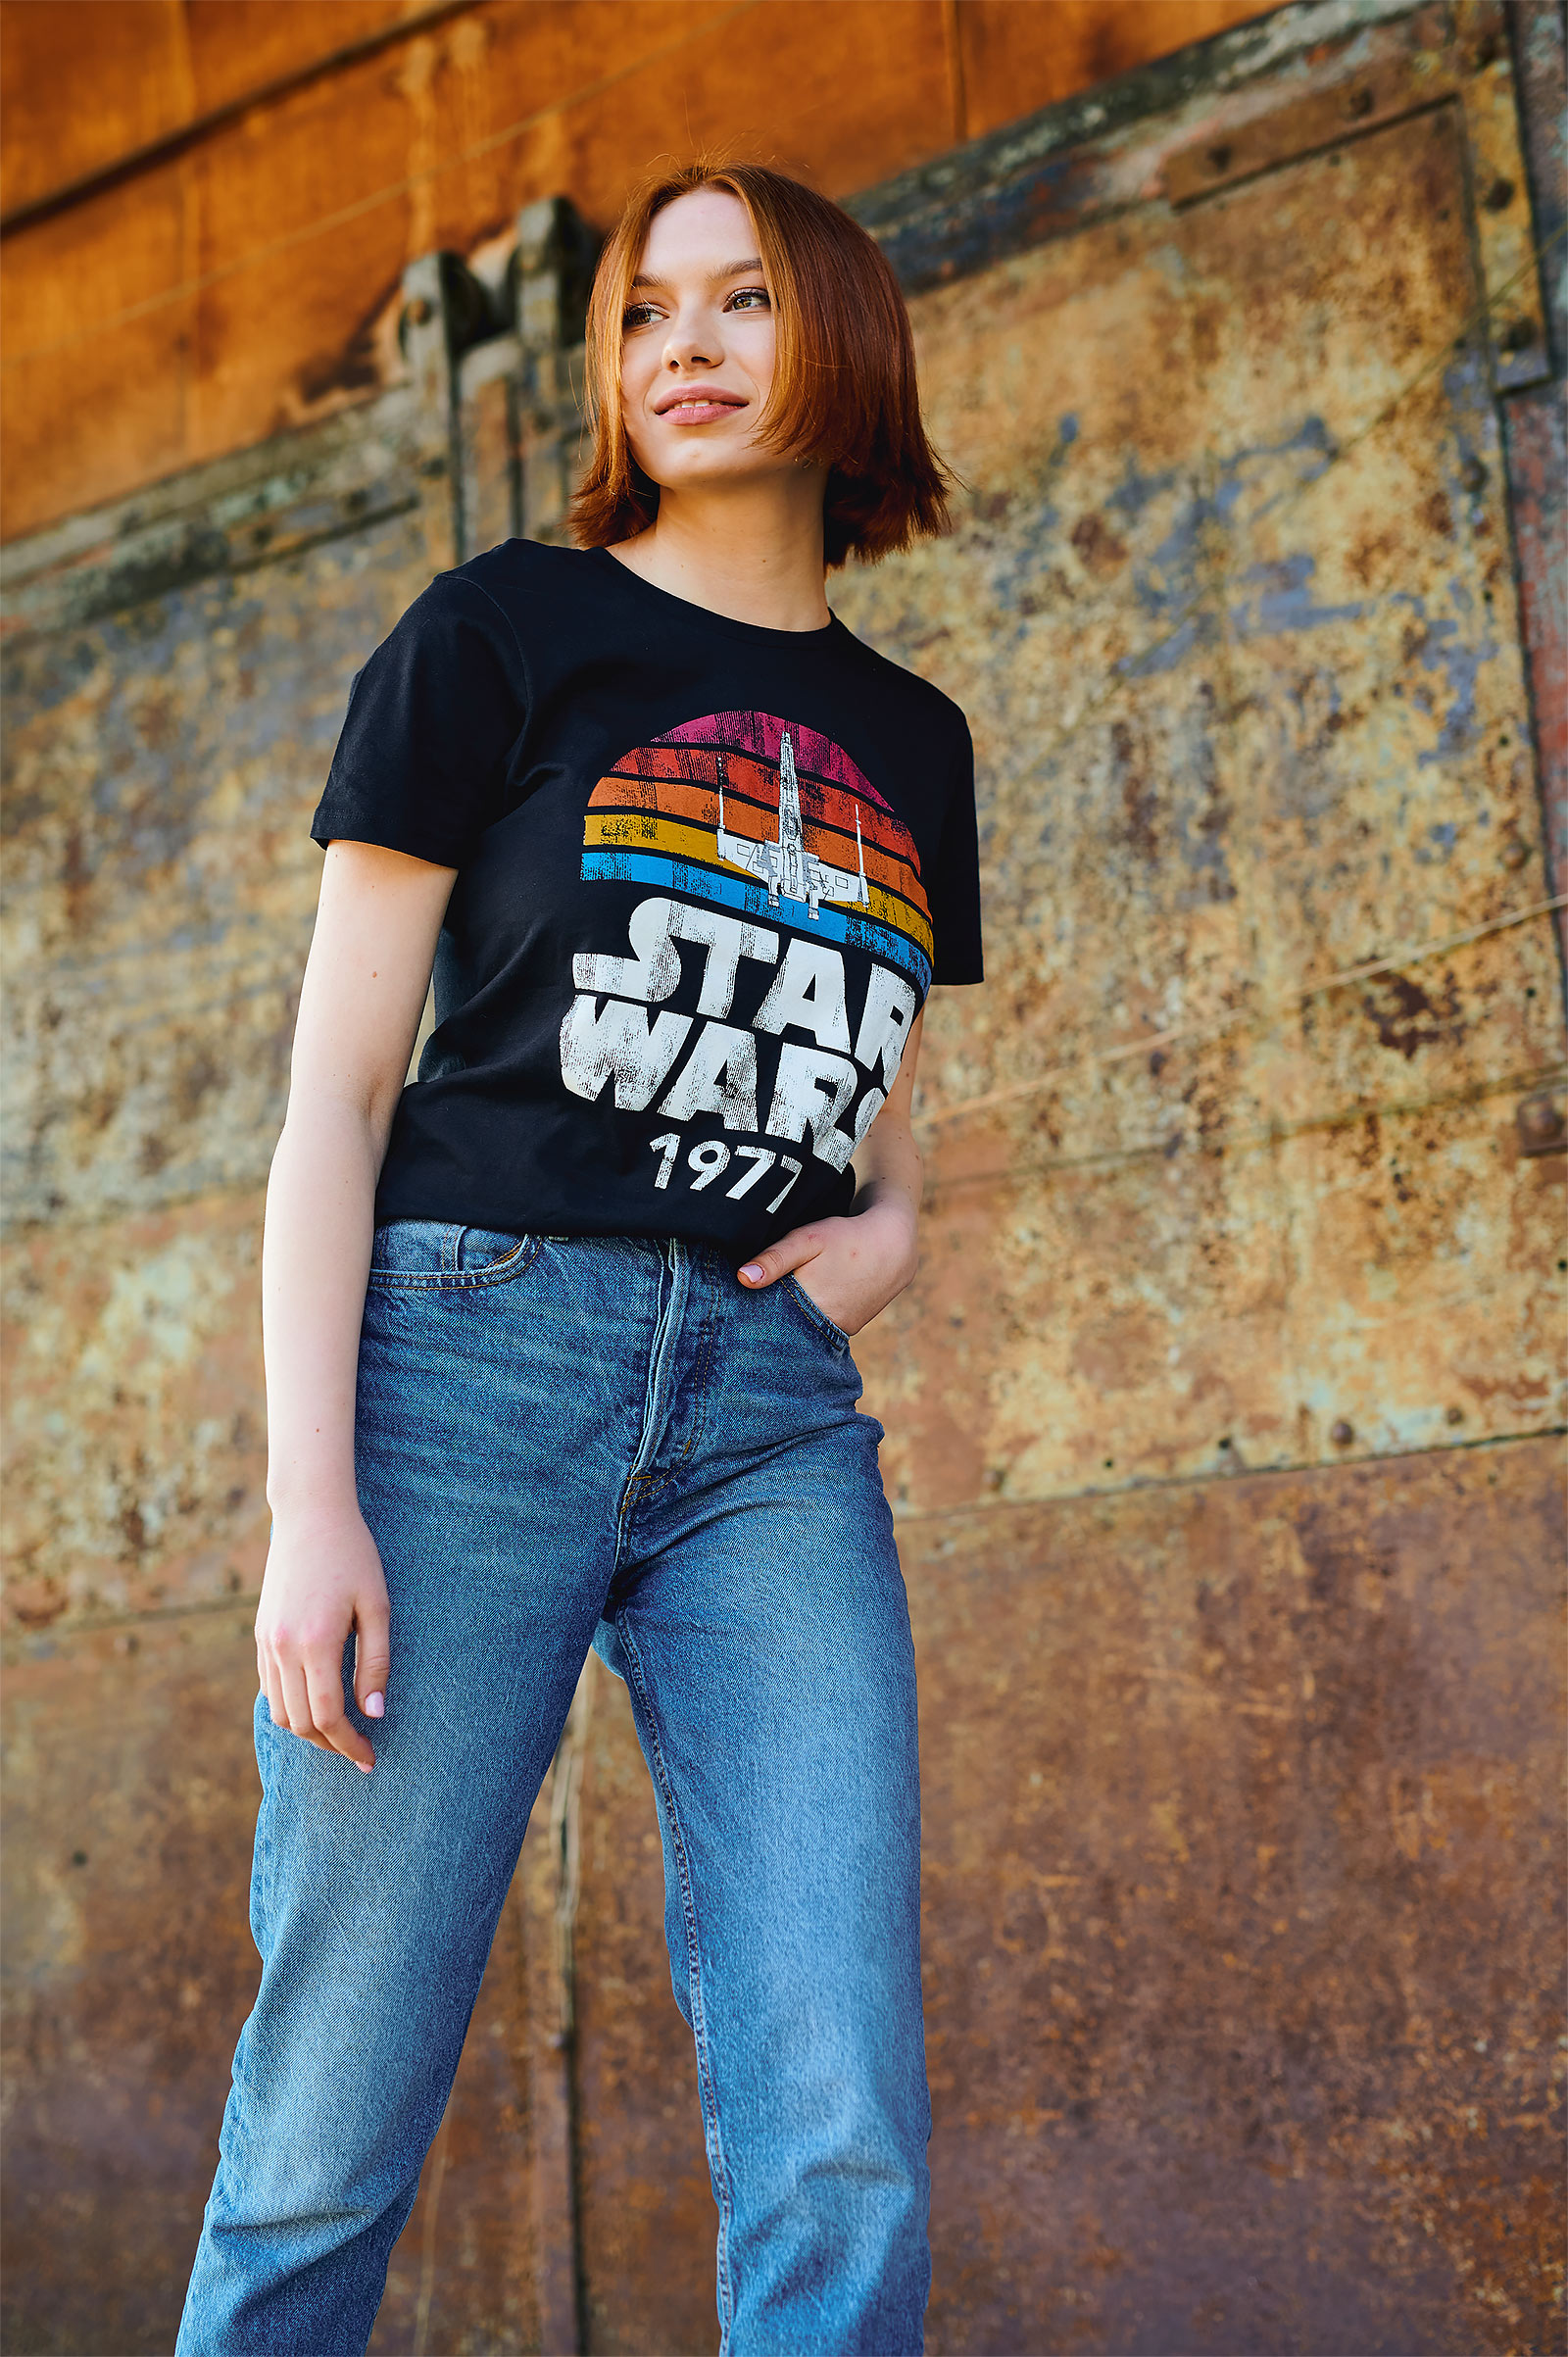 Star Wars of 1977 Retro T-Shirt schwarz